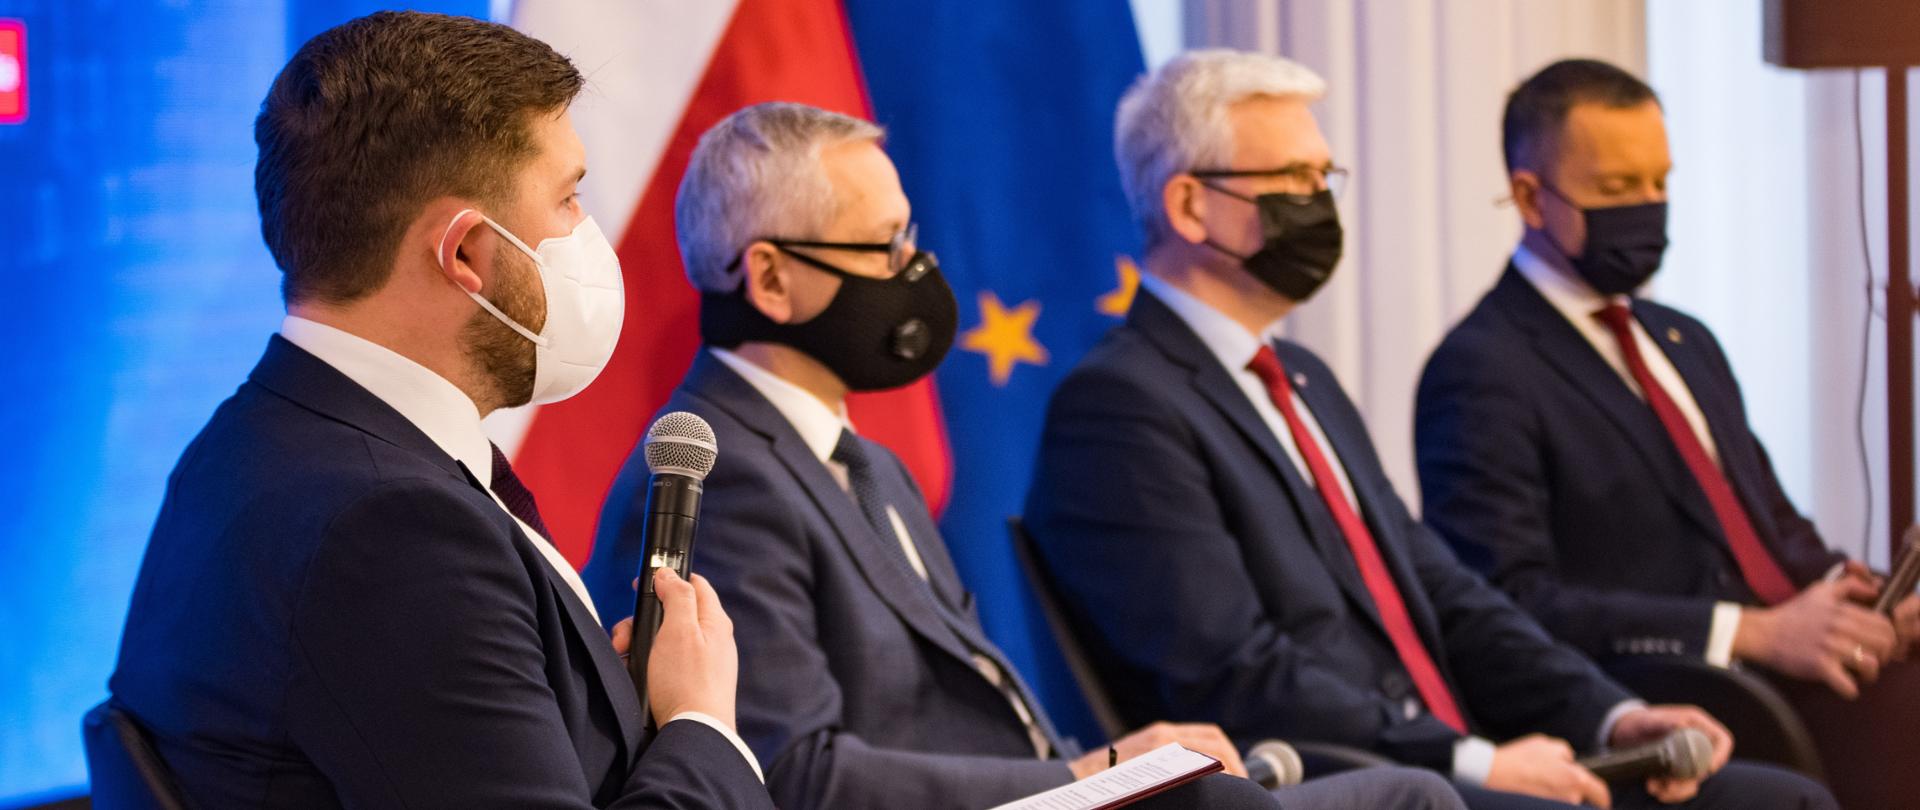 Wiceminister Andrzej Śliwka przemawia do mikrofonu podczas Forum MAP. W tle pozostali uczestnicy wydarzenia oraz flaga Polski i UE.